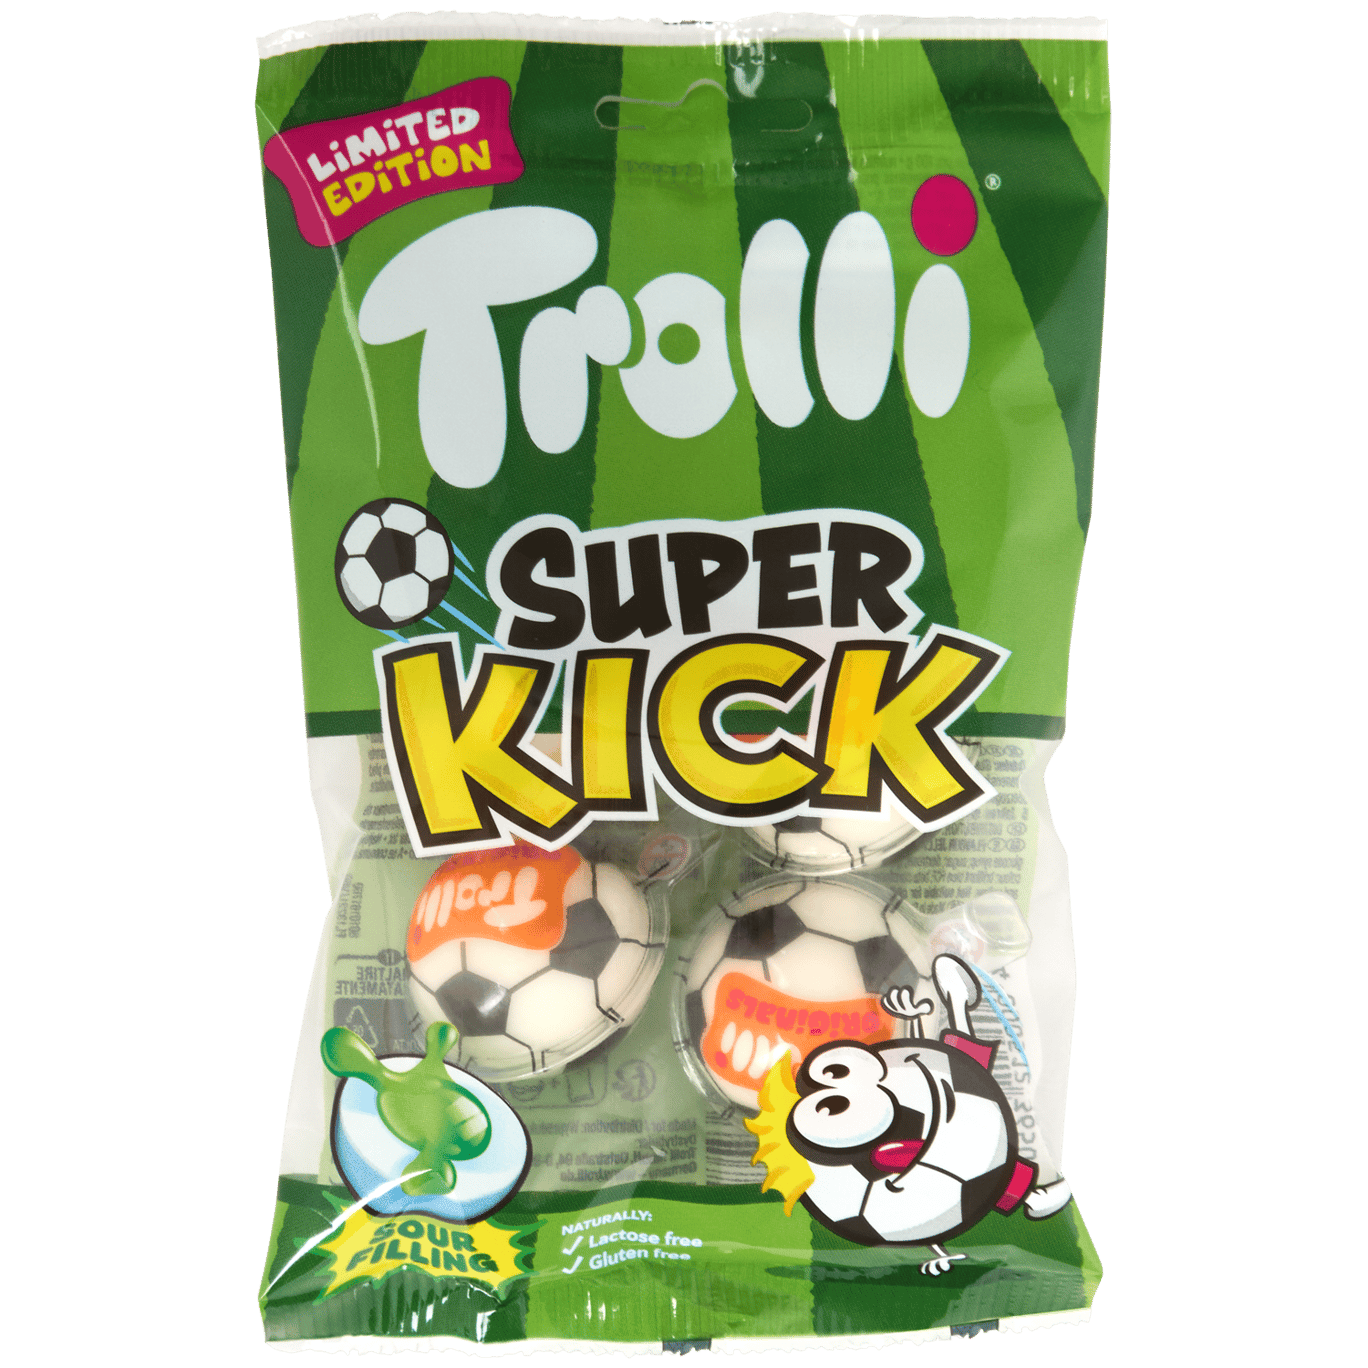 Trolli Super Kick jelly's